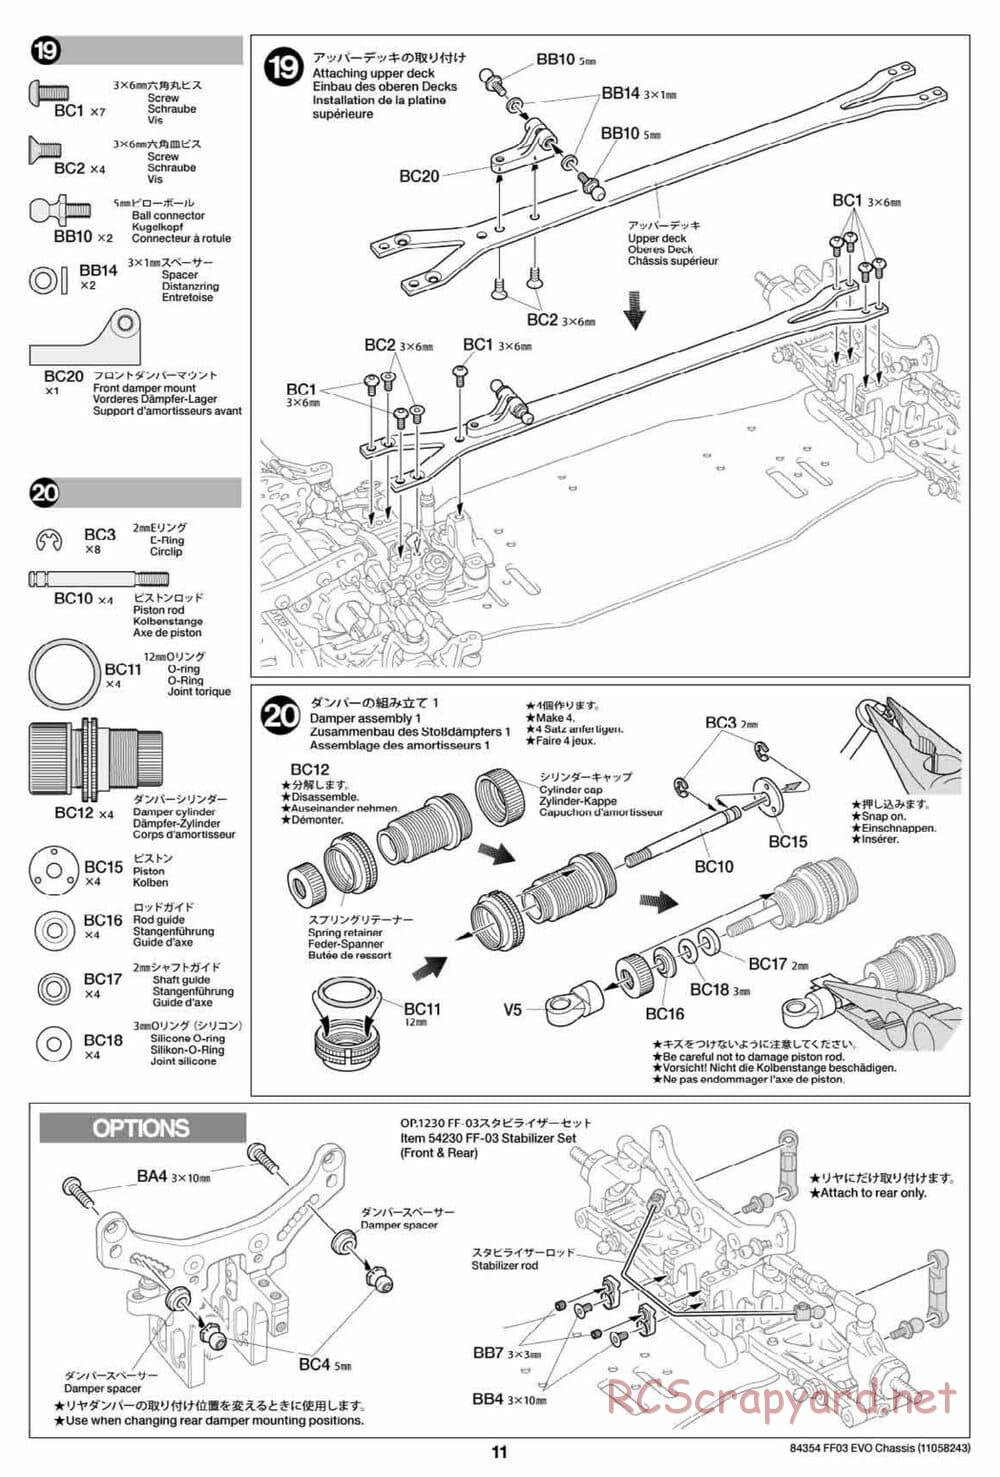 Tamiya - FF-03 Evo Chassis - Manual - Page 11